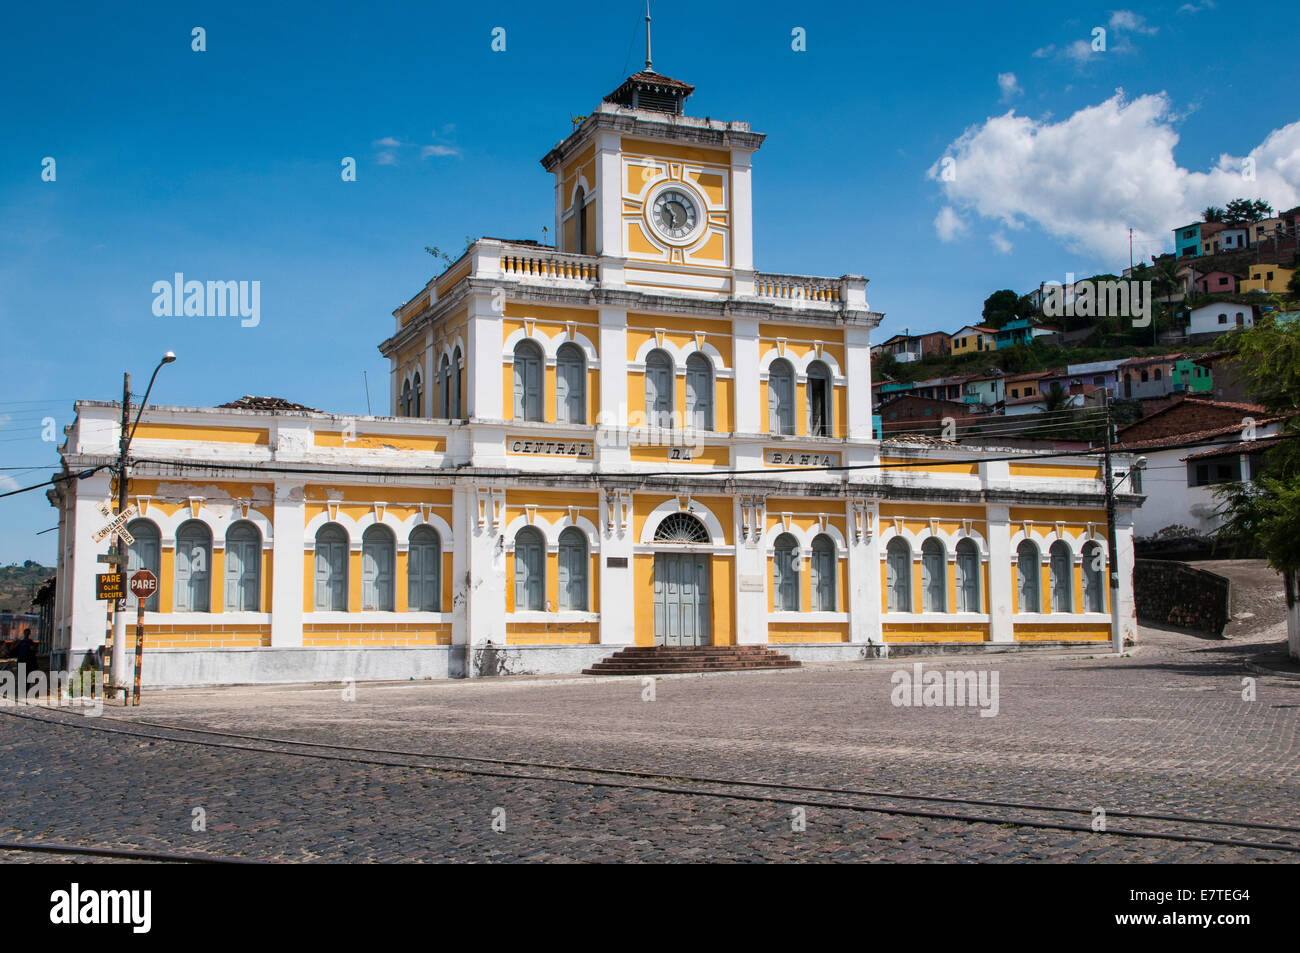 Bâtiment colonial, Cachoeira, Bahia, Brésil Banque D'Images